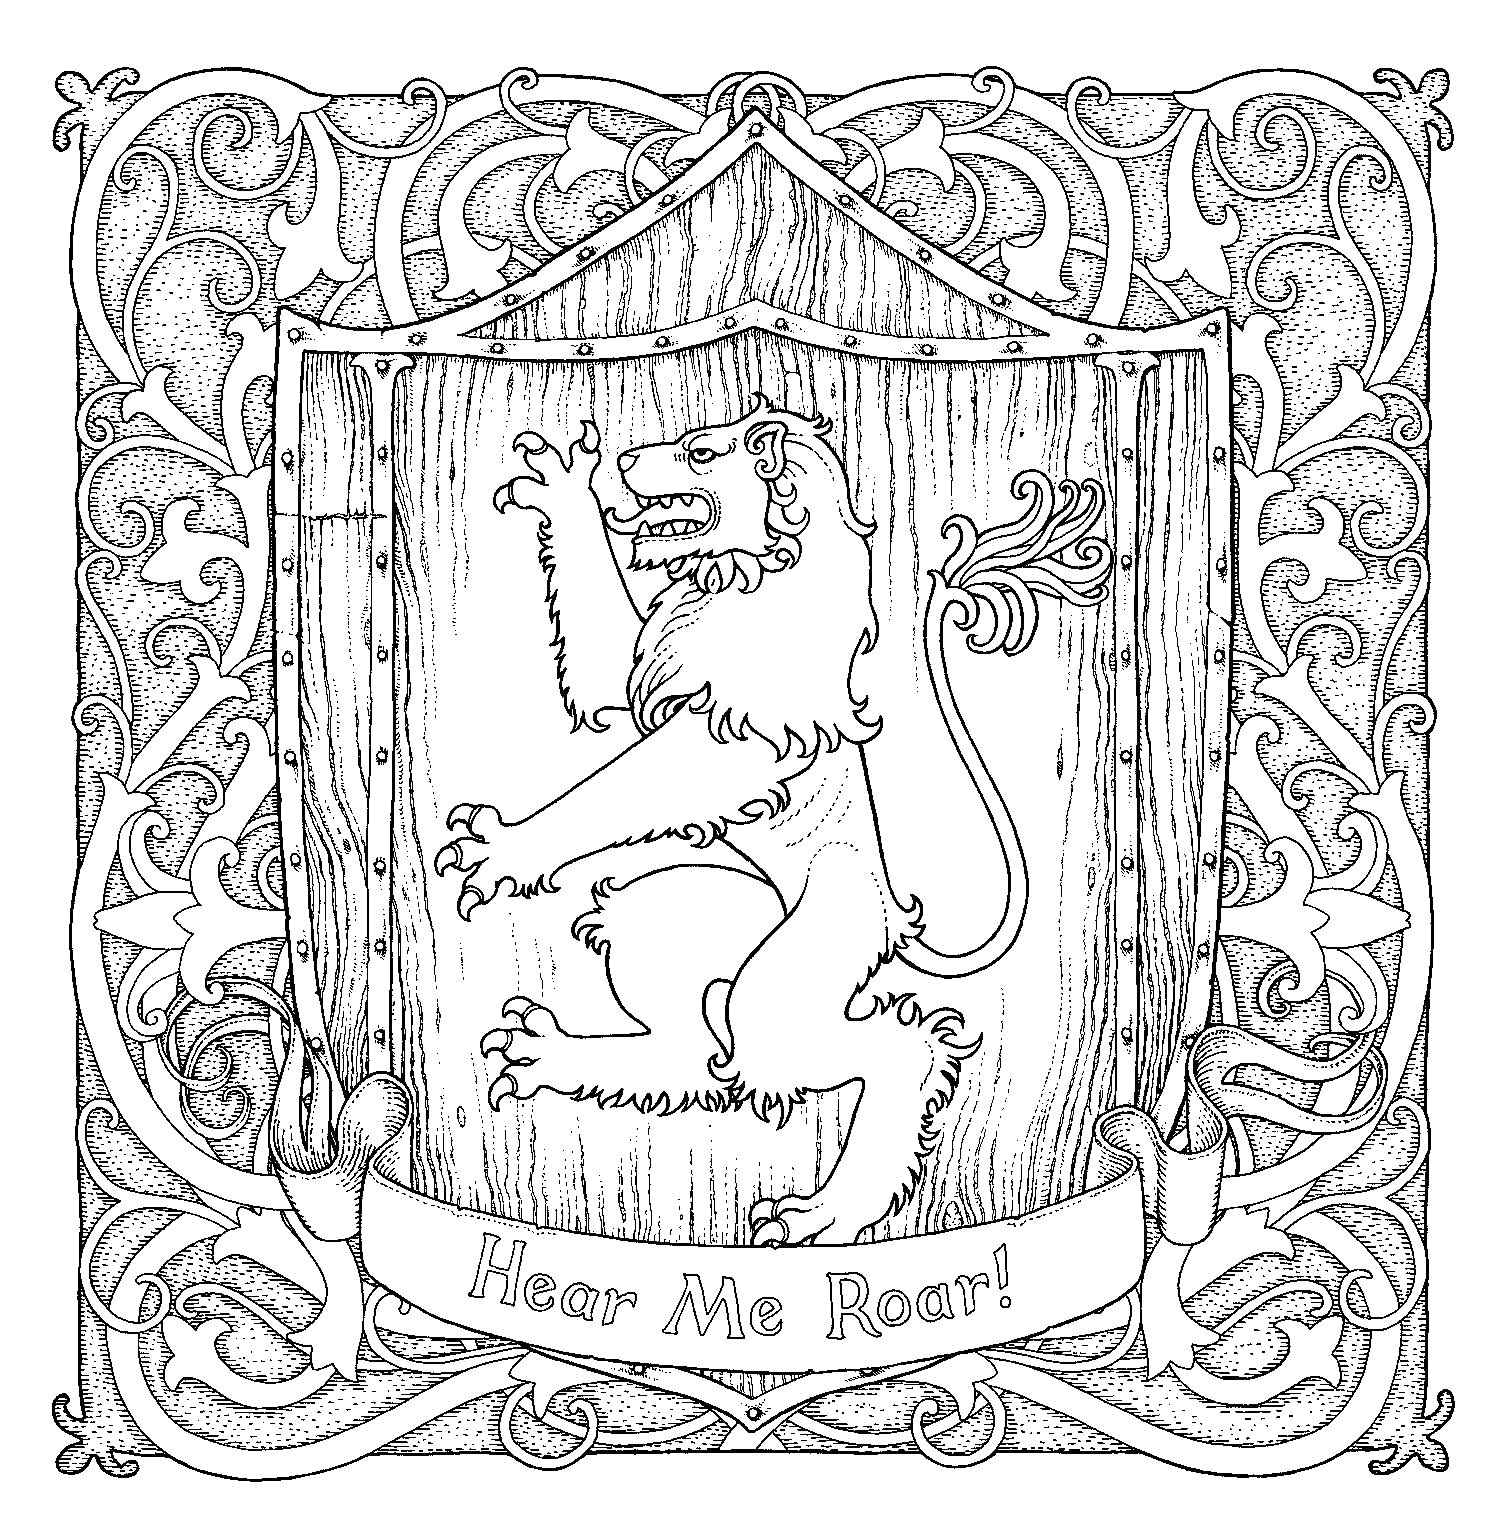 Герб дома Ланнистеров - щит, держащийся на задних лапах лев, деревянный фон, декоративная рамка, лента с надписью 